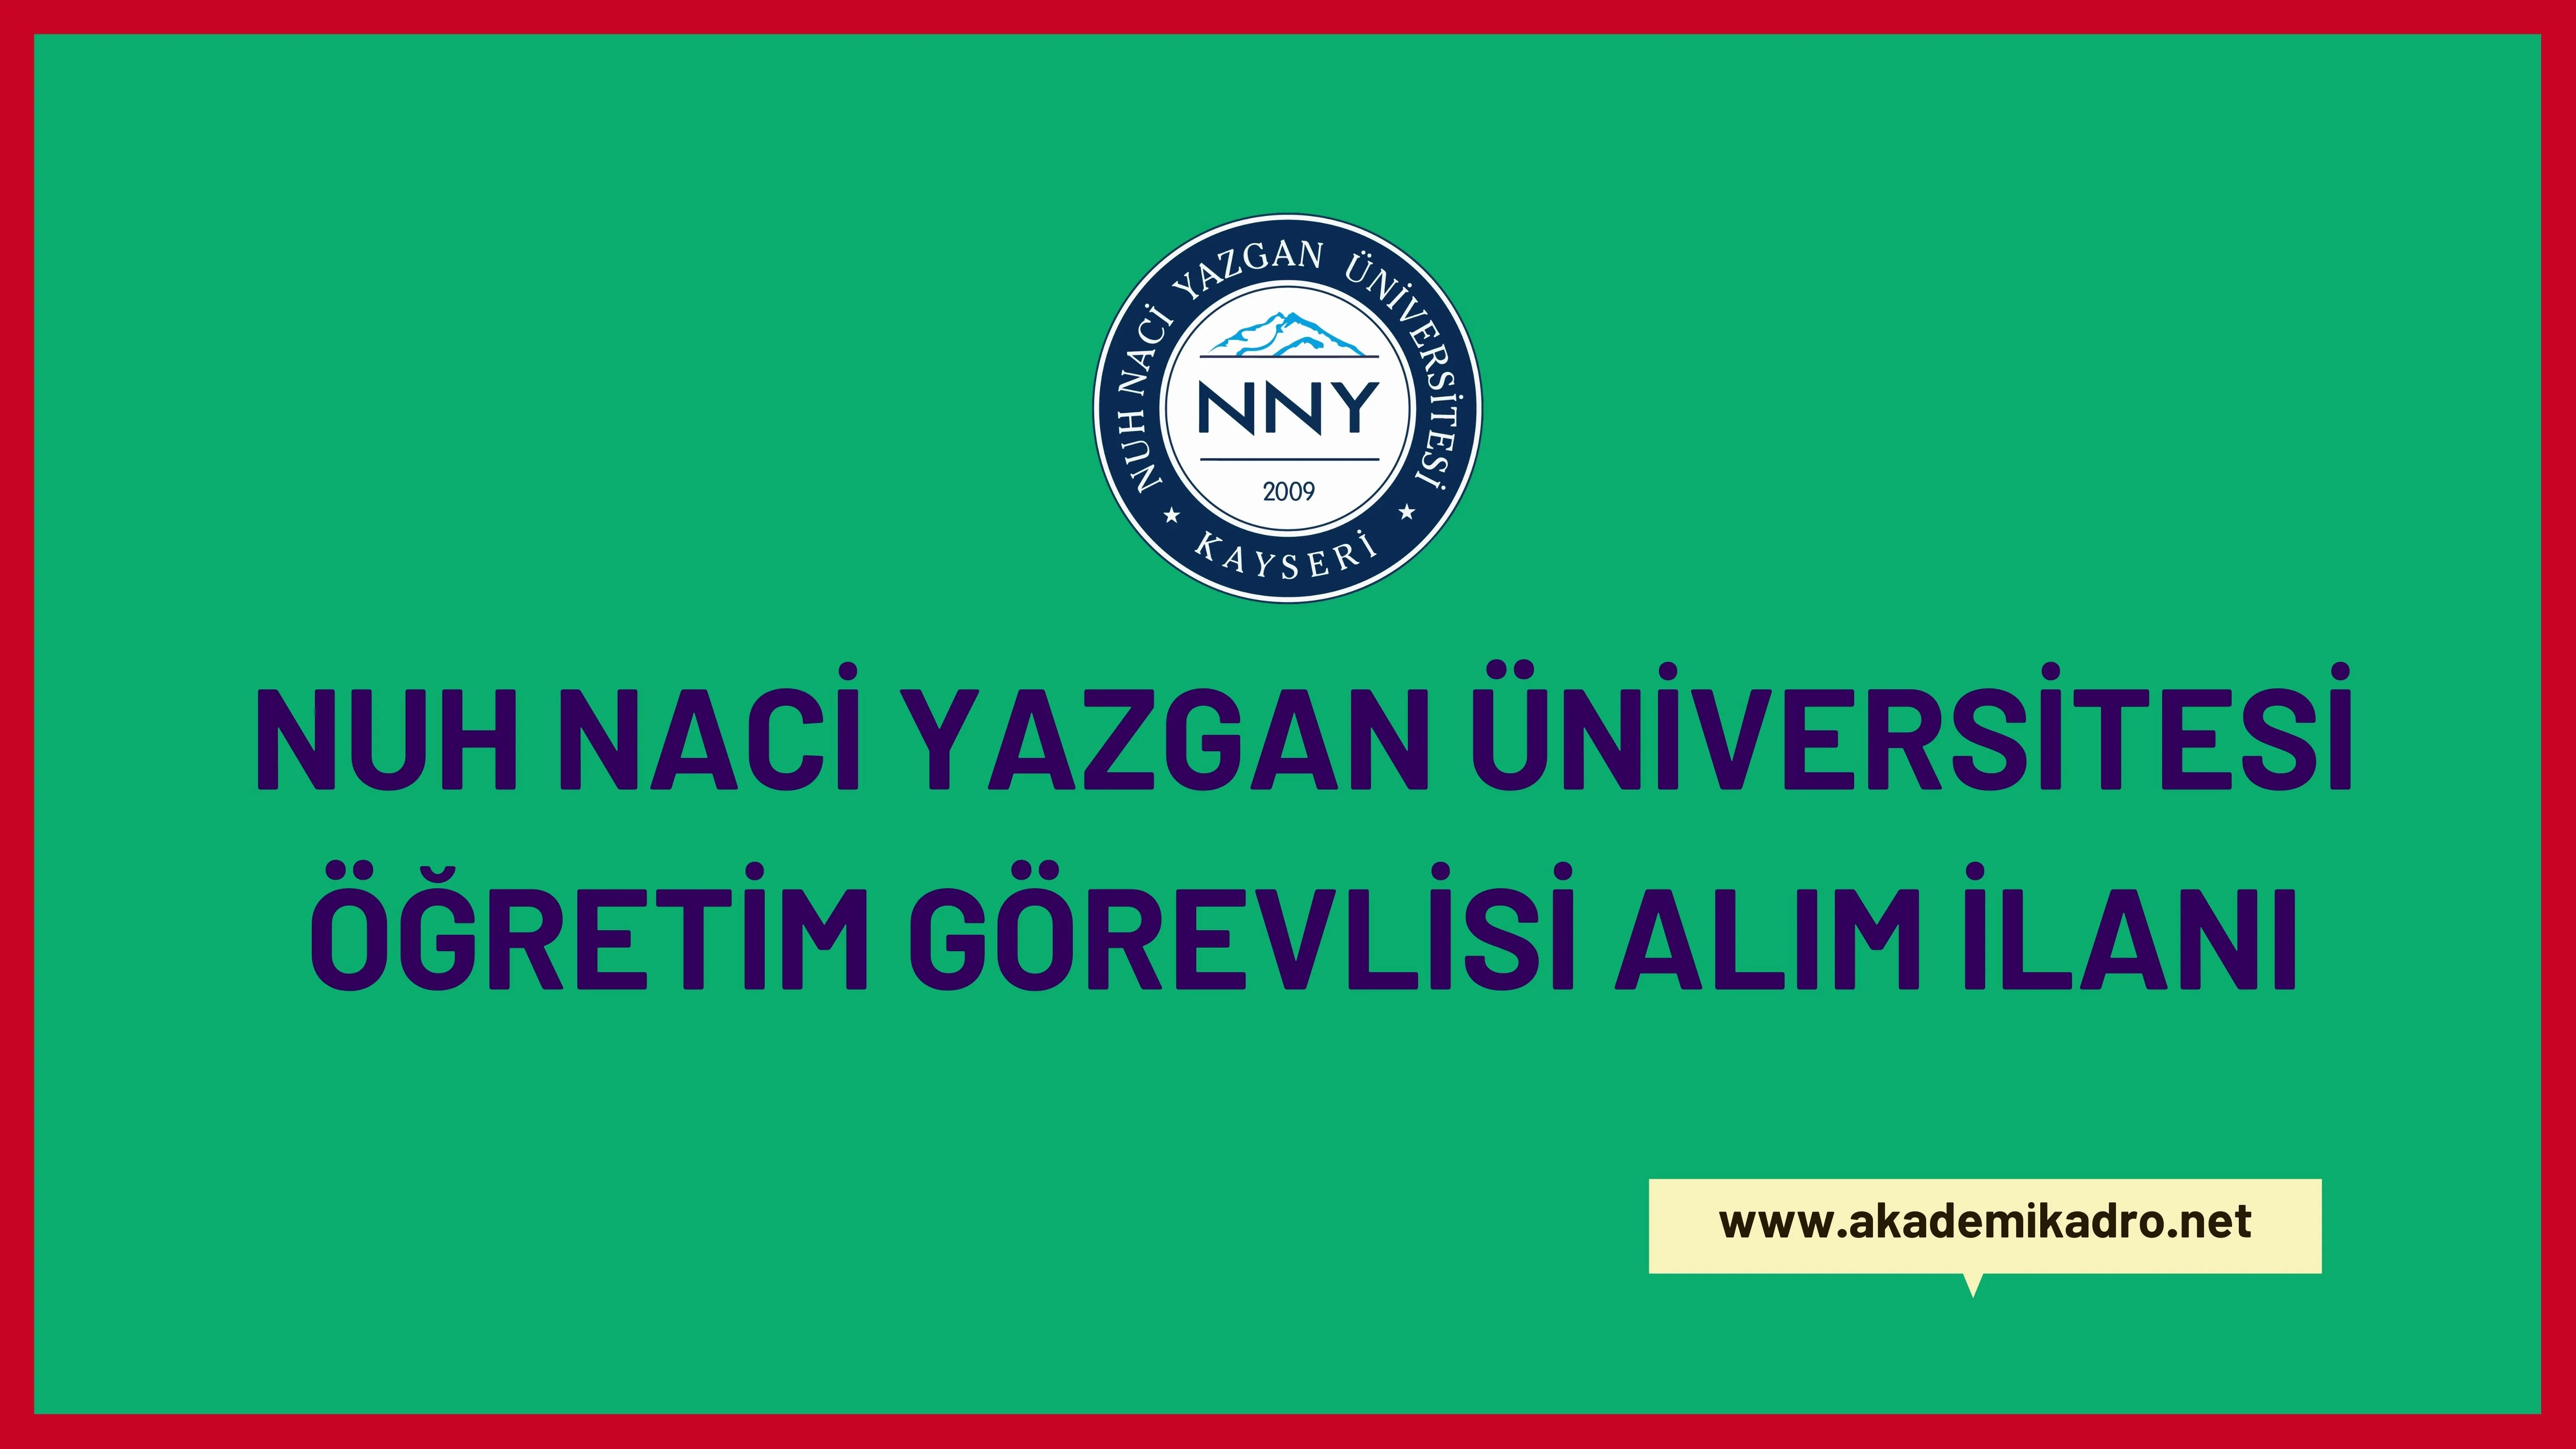 Nuh Naci Yazgan Üniversitesi 3 öğretim görevlisi alacaktır.